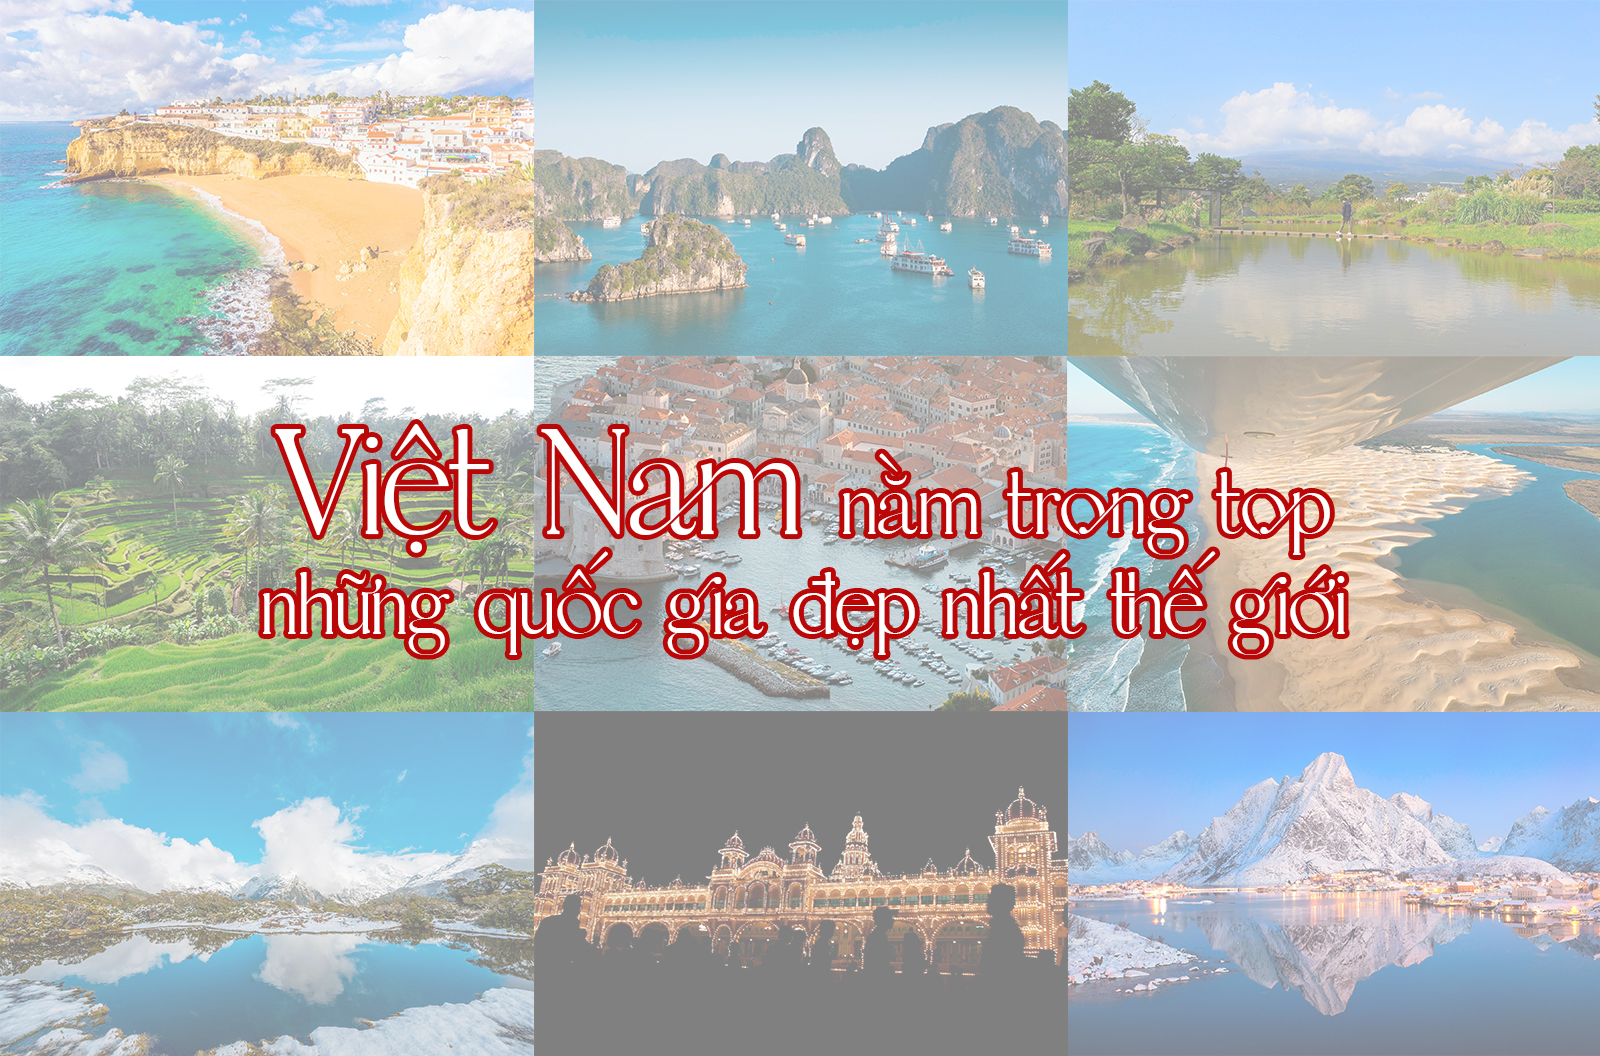 Việt Nam nằm trong top những quốc gia đẹp nhất thế giới - 1